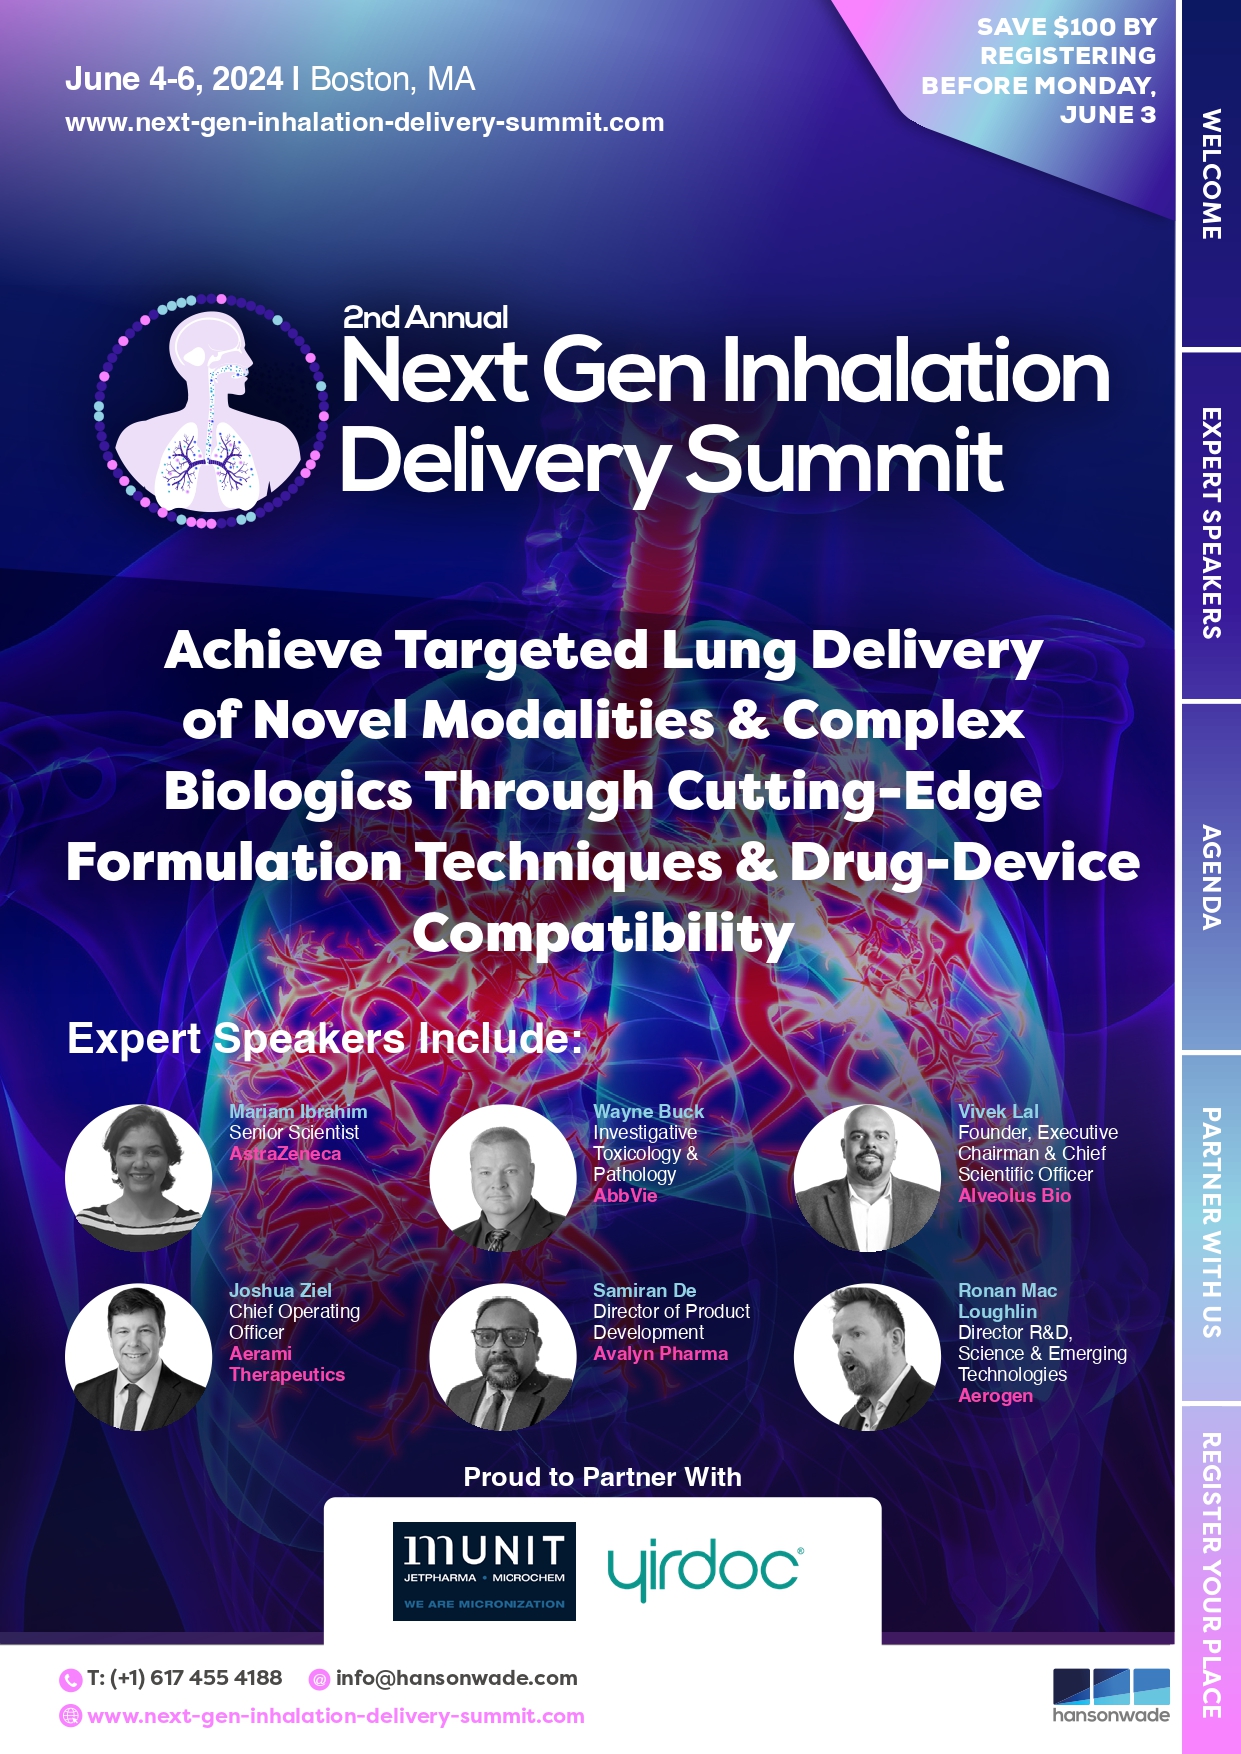 Next Gen Inhalation Delivery Summit brochure (3)_page-0001